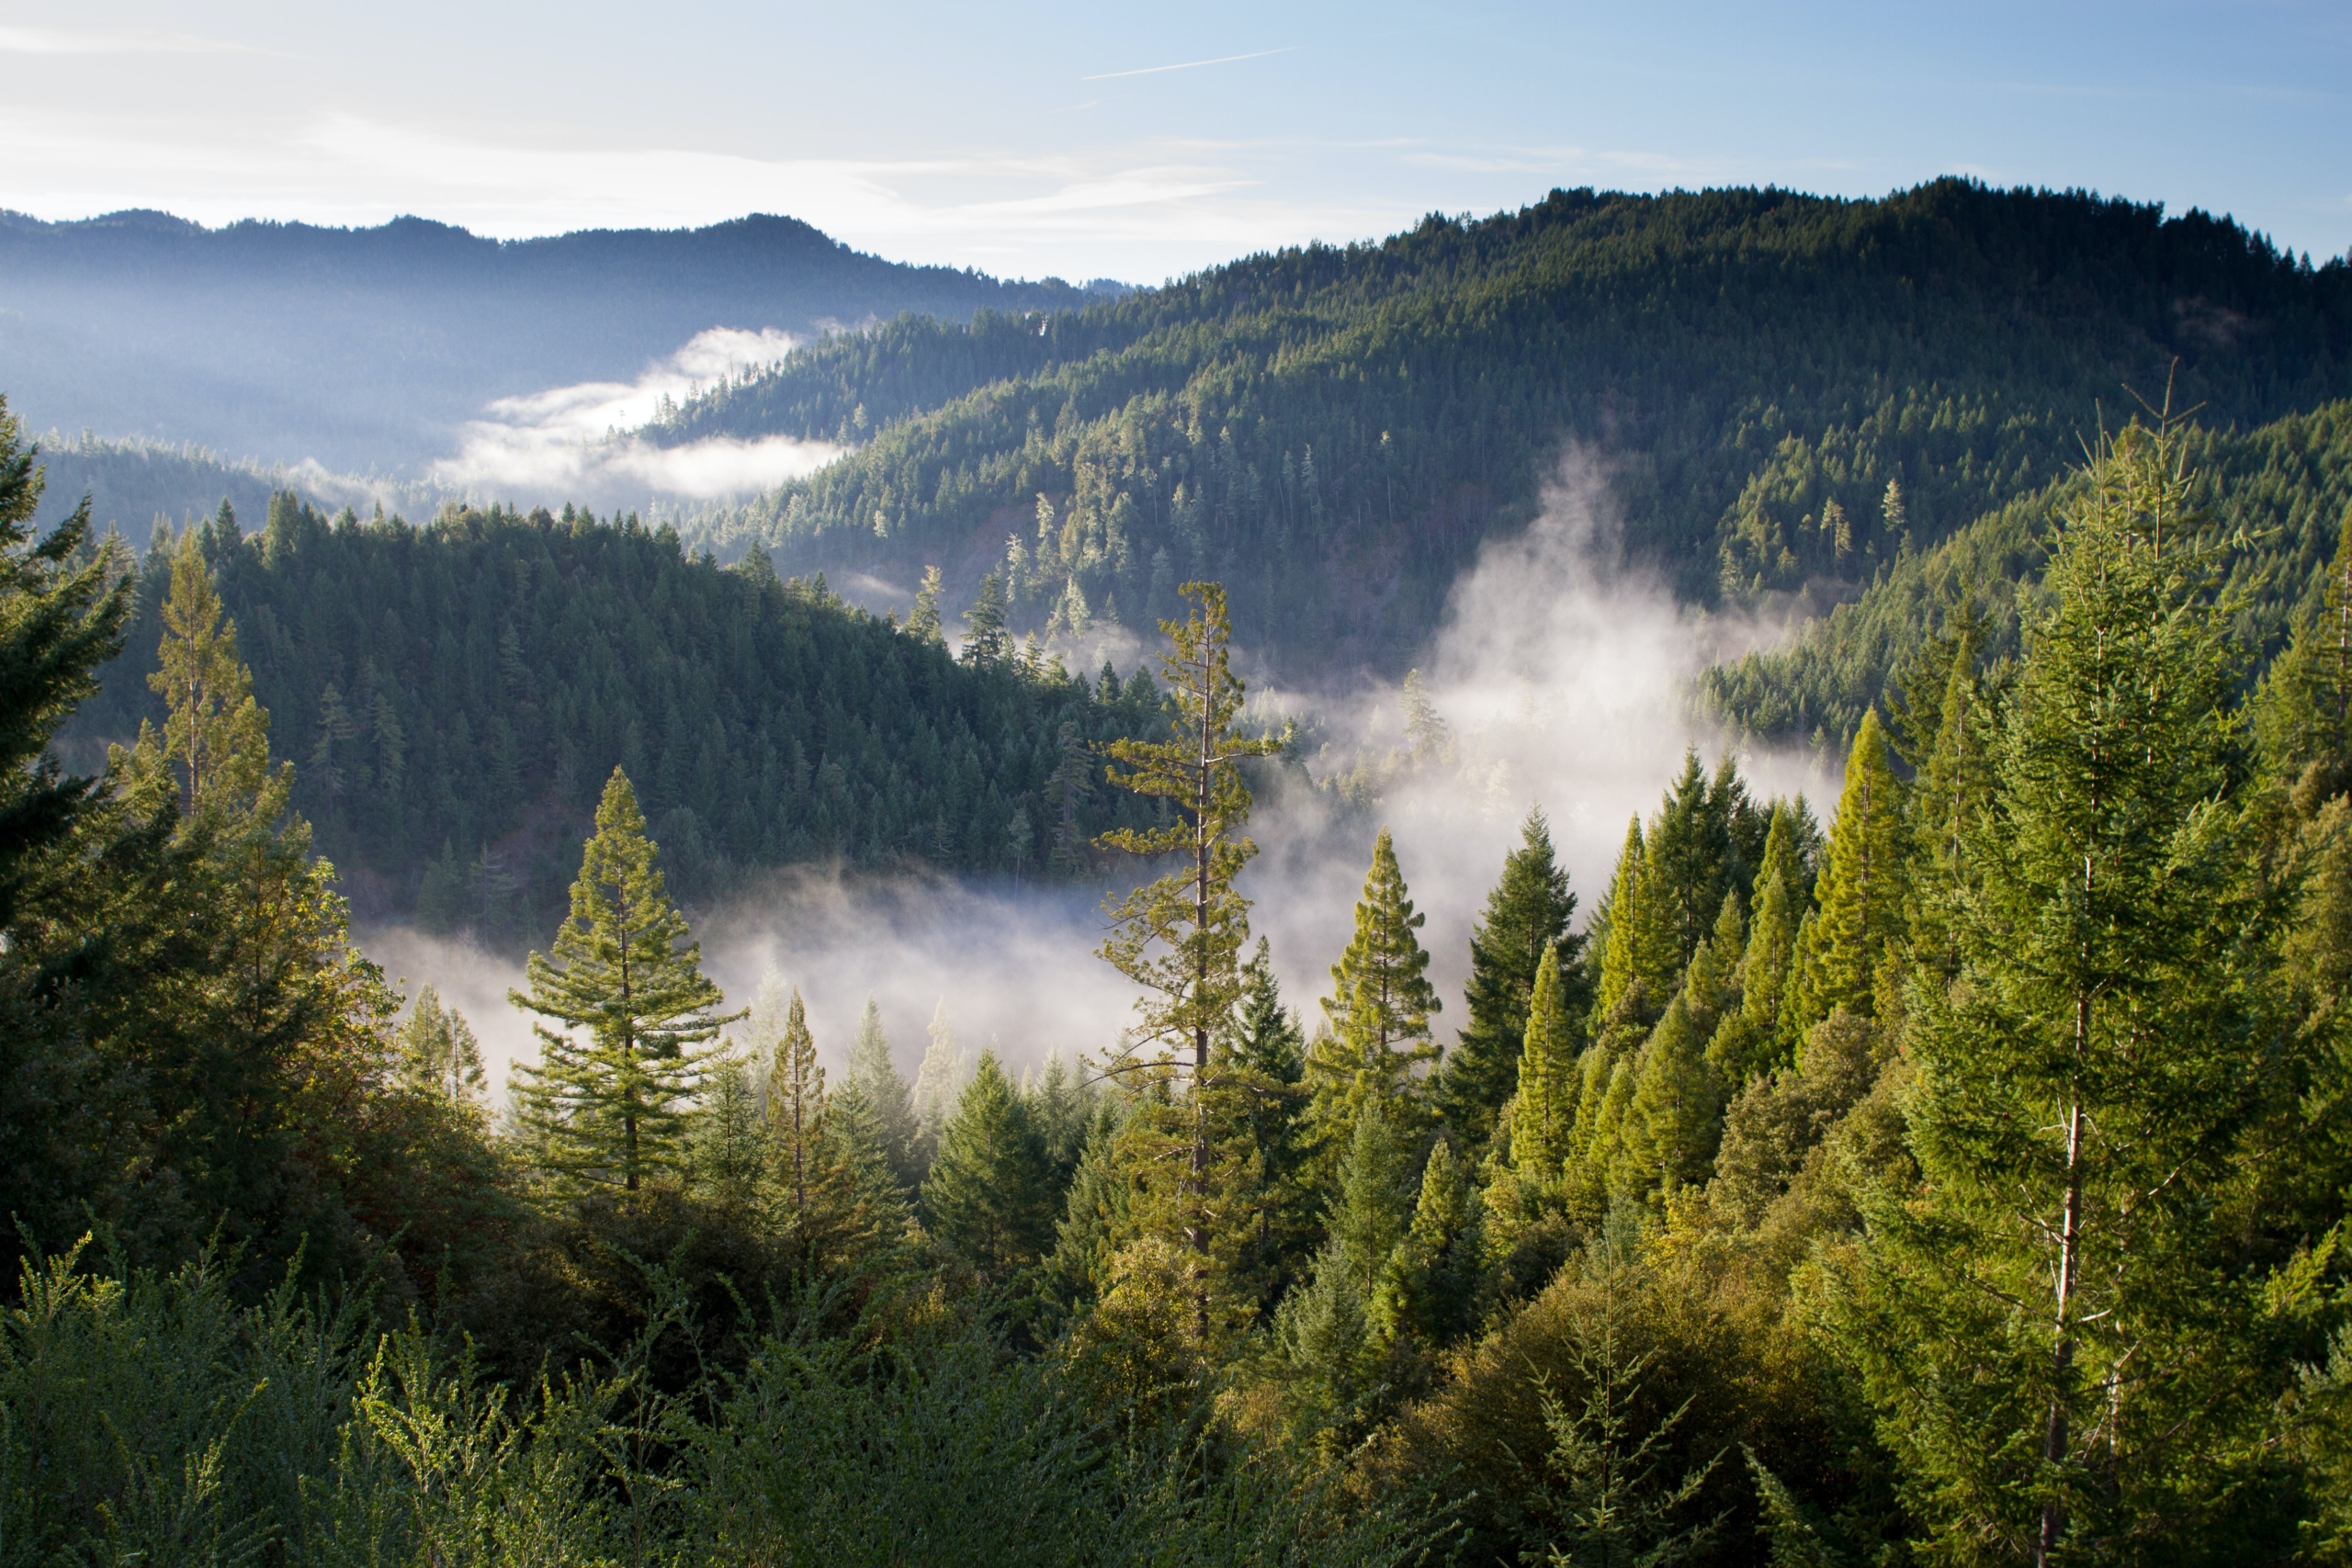 Luftbild eines großen Waldes, welcher von Nebelschwaden durchzogen wird